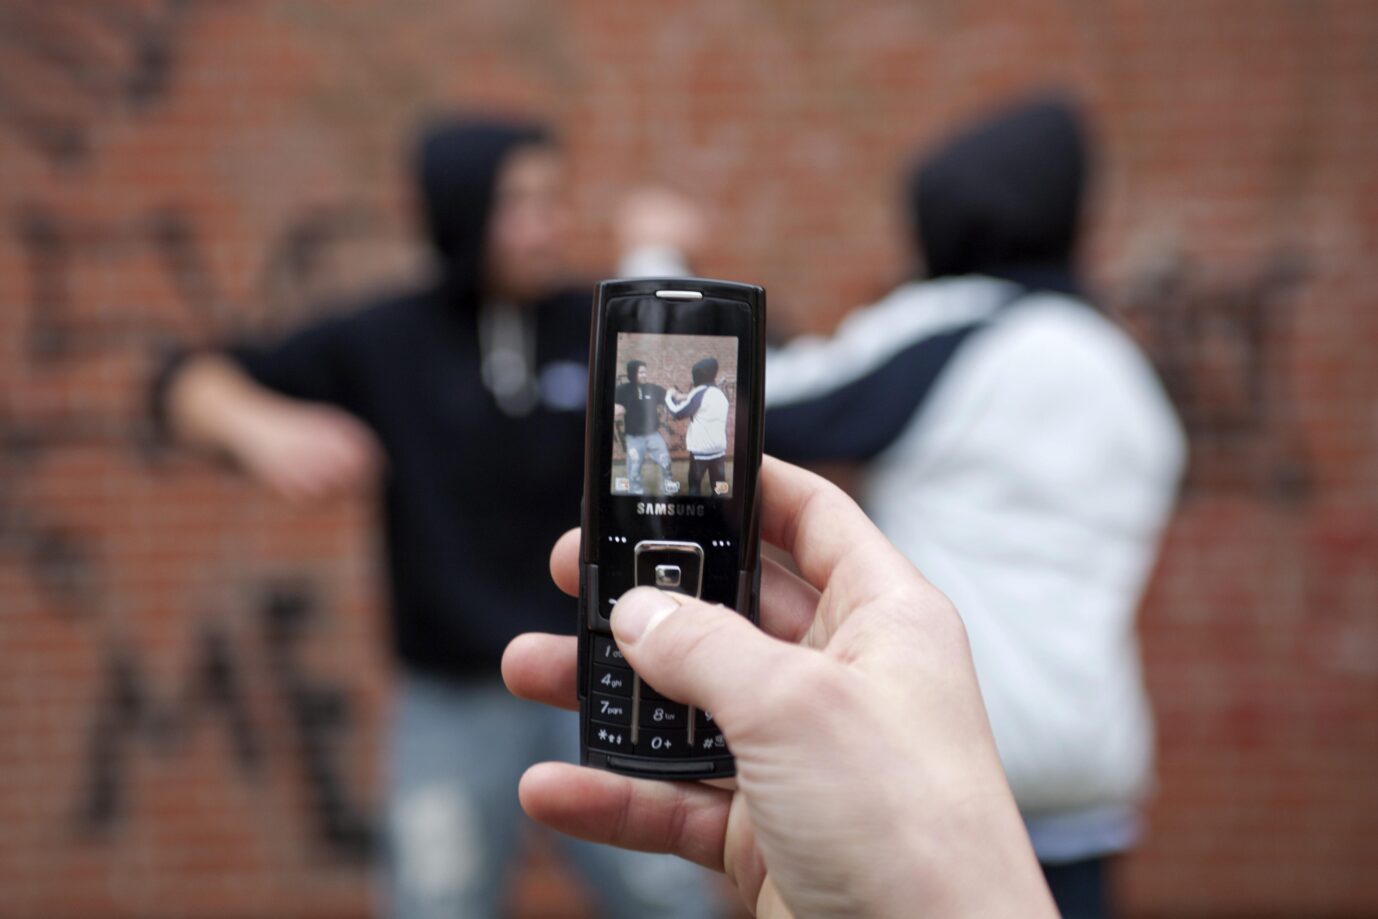 Auf dem Foto befindet sich eine Szene, bei der eine Person mit einem klassischen Mobiltelefon zwei Schüler bei einem Gewaltexzess aufnimmt. (Themenbild/Symbolbild)